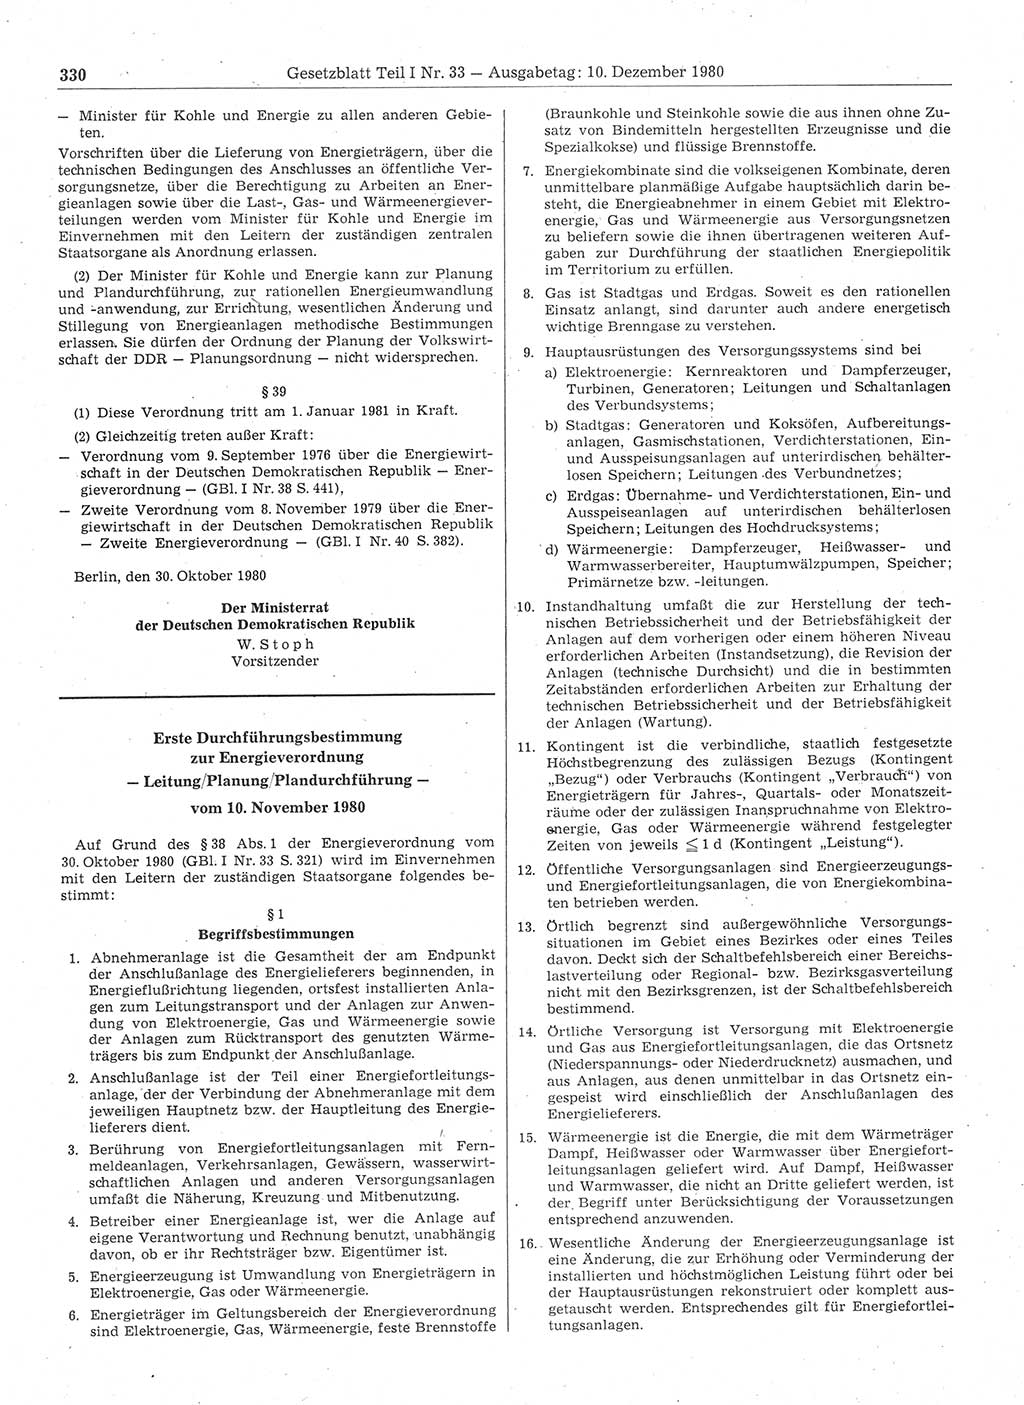 Gesetzblatt (GBl.) der Deutschen Demokratischen Republik (DDR) Teil Ⅰ 1980, Seite 330 (GBl. DDR Ⅰ 1980, S. 330)